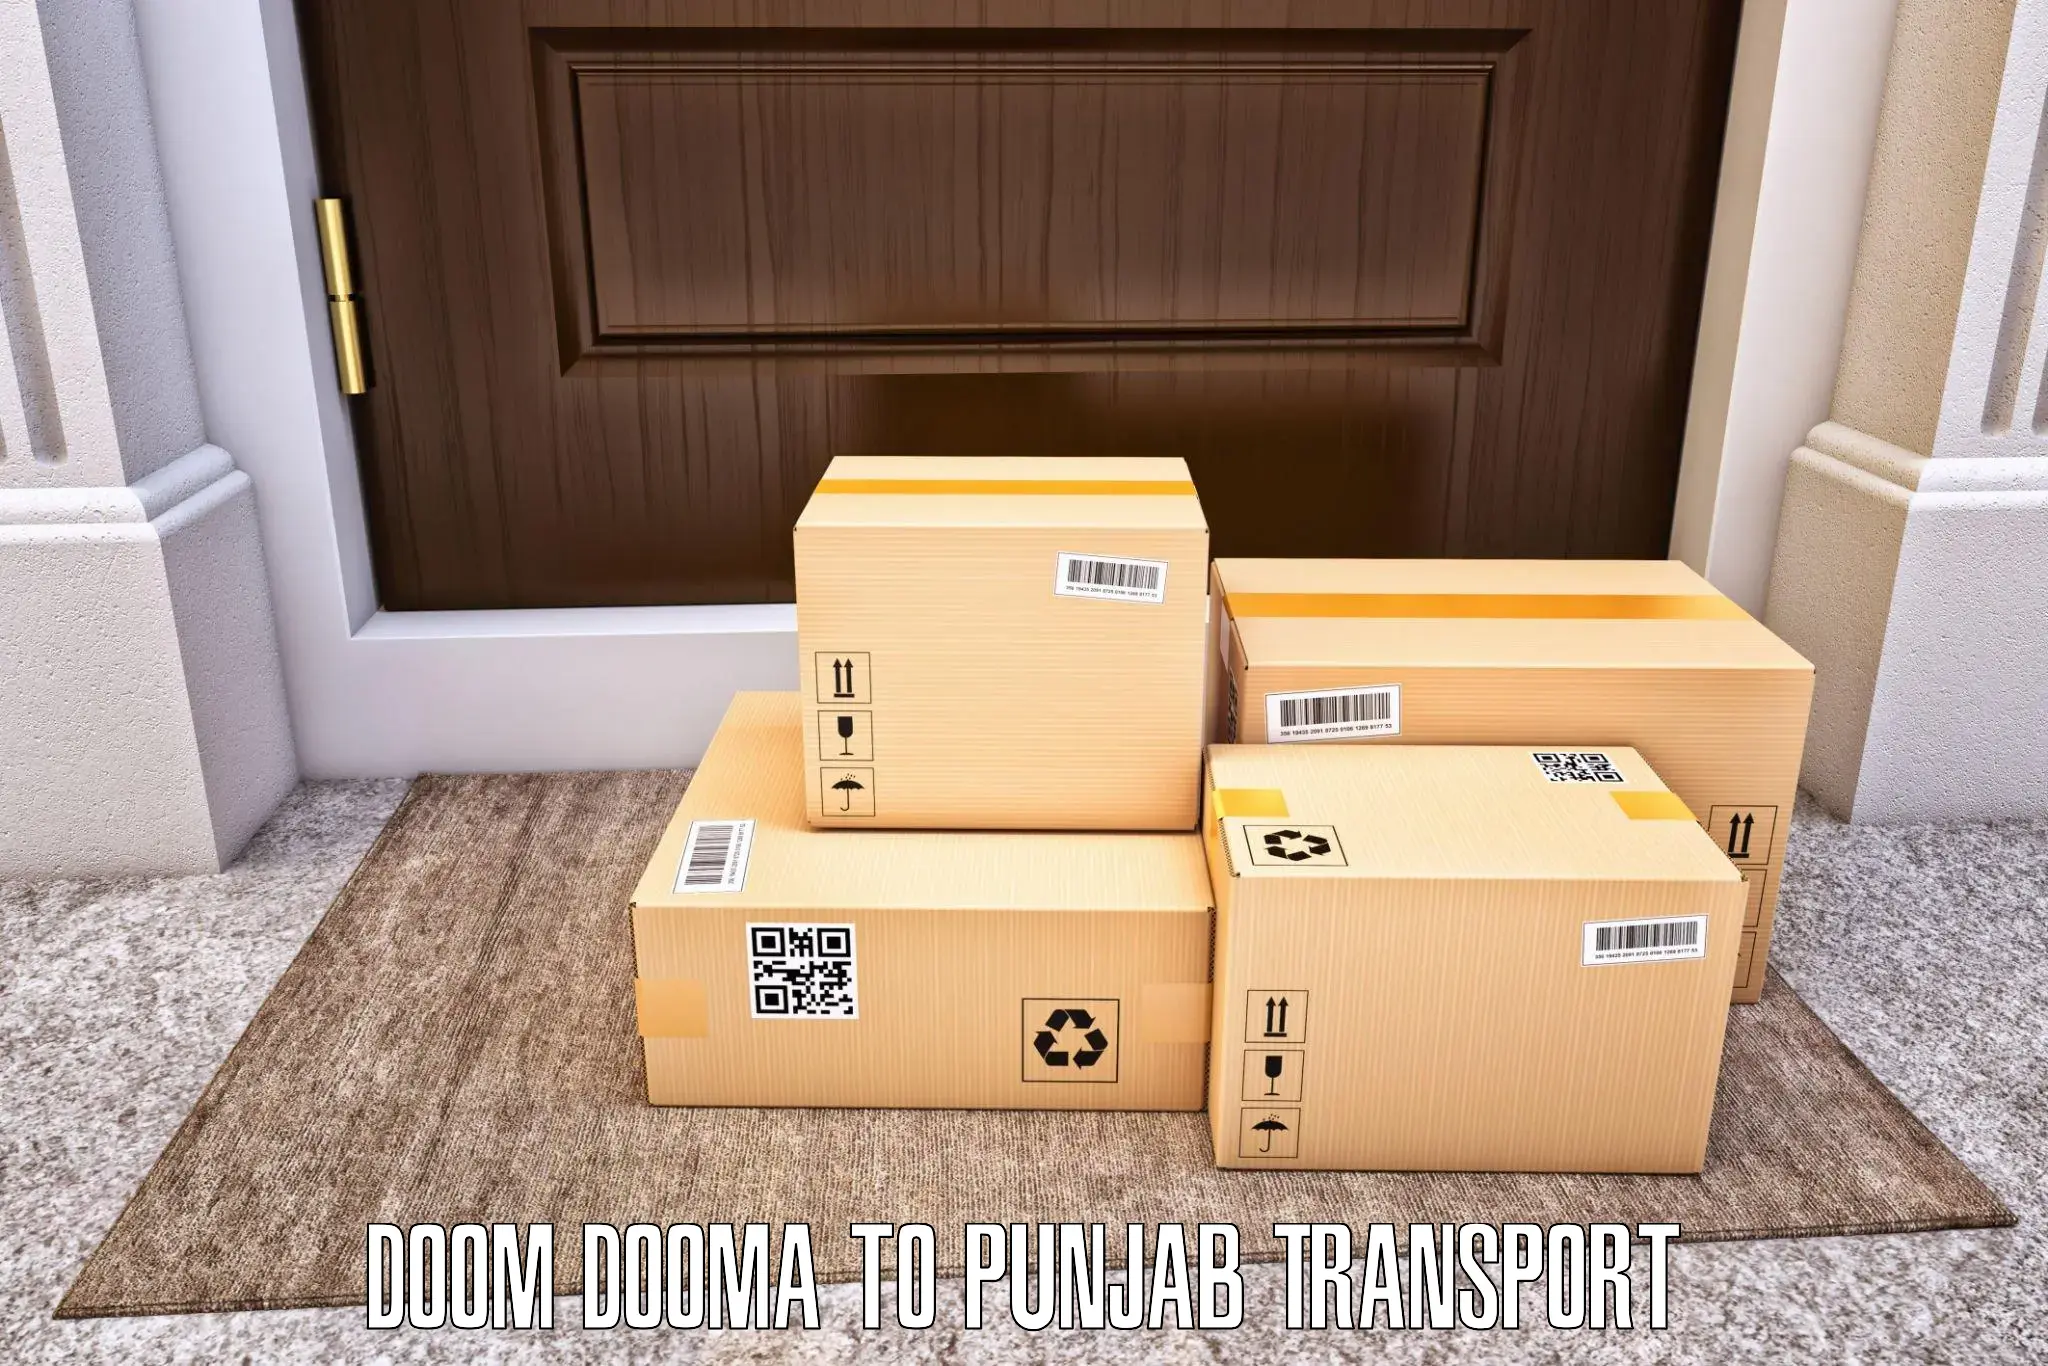 Online transport booking in Doom Dooma to Zirakpur